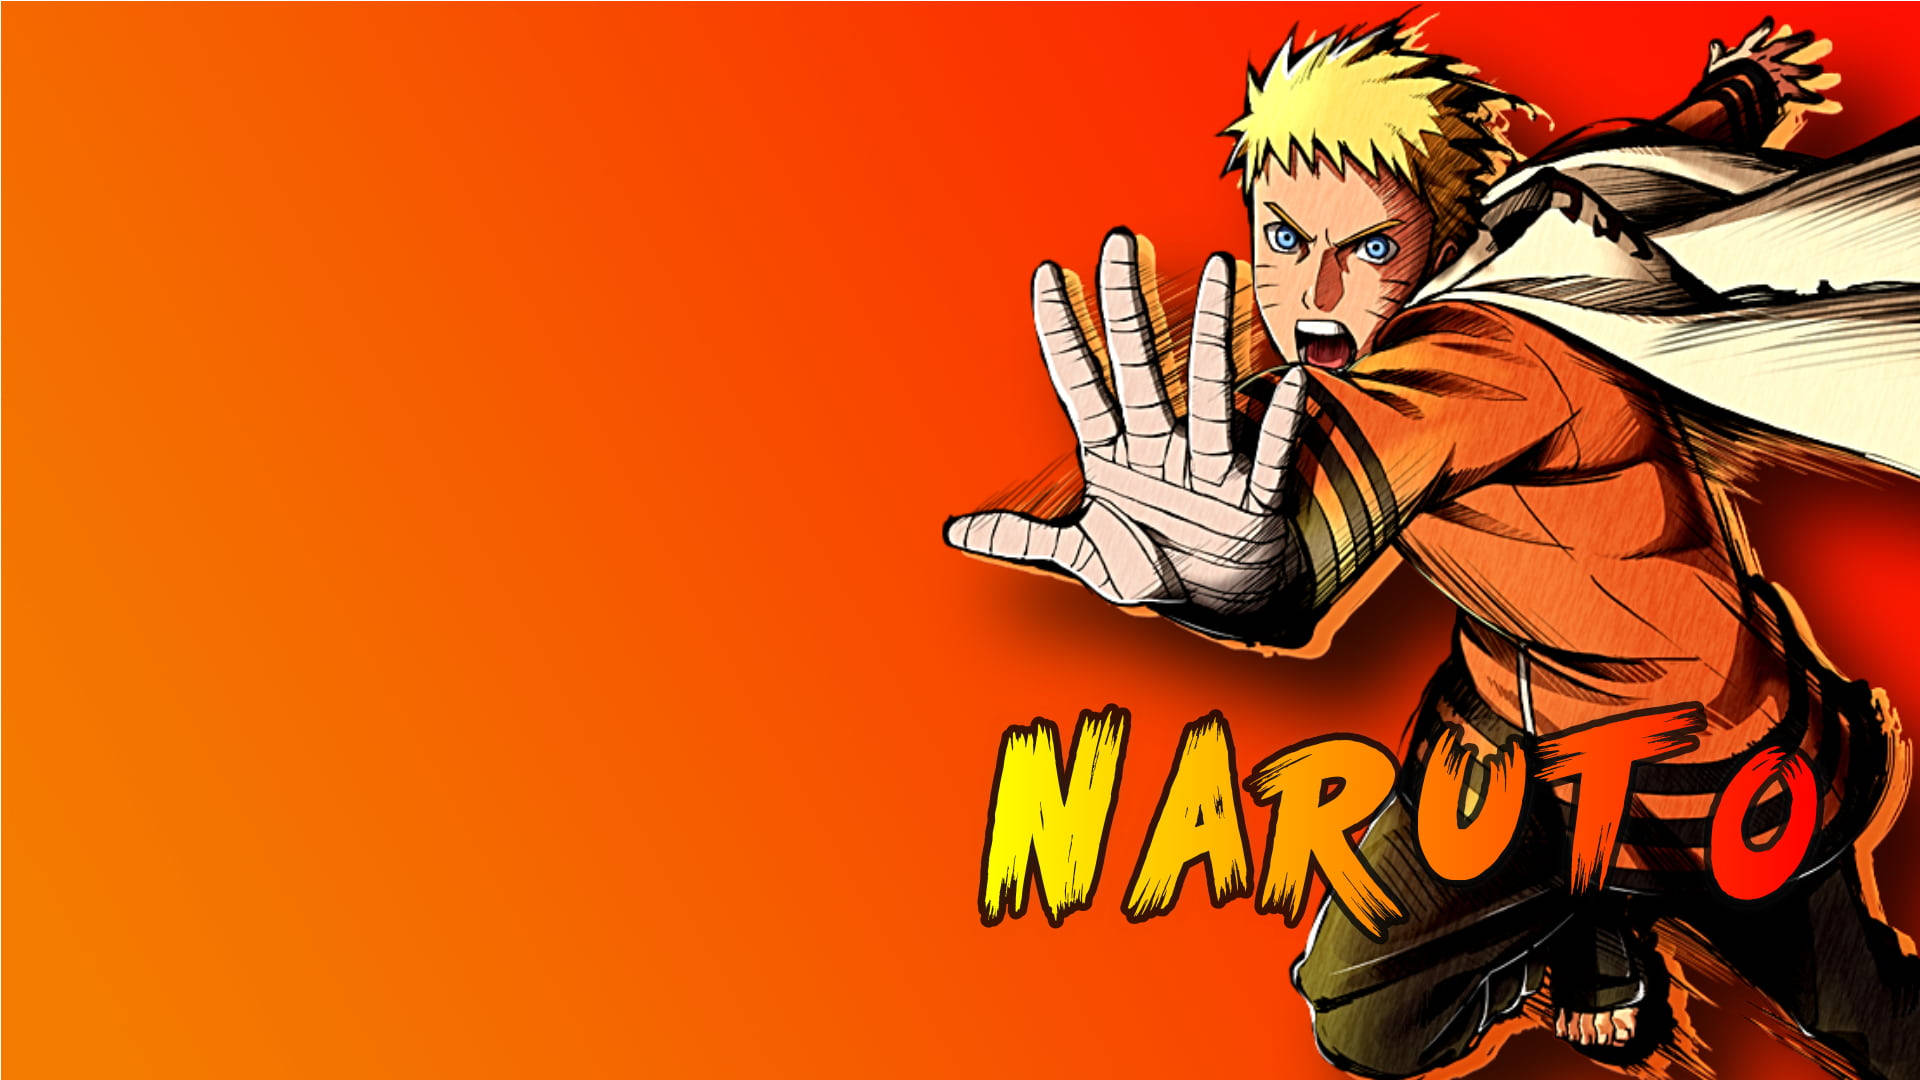 Moving Naruto Technique